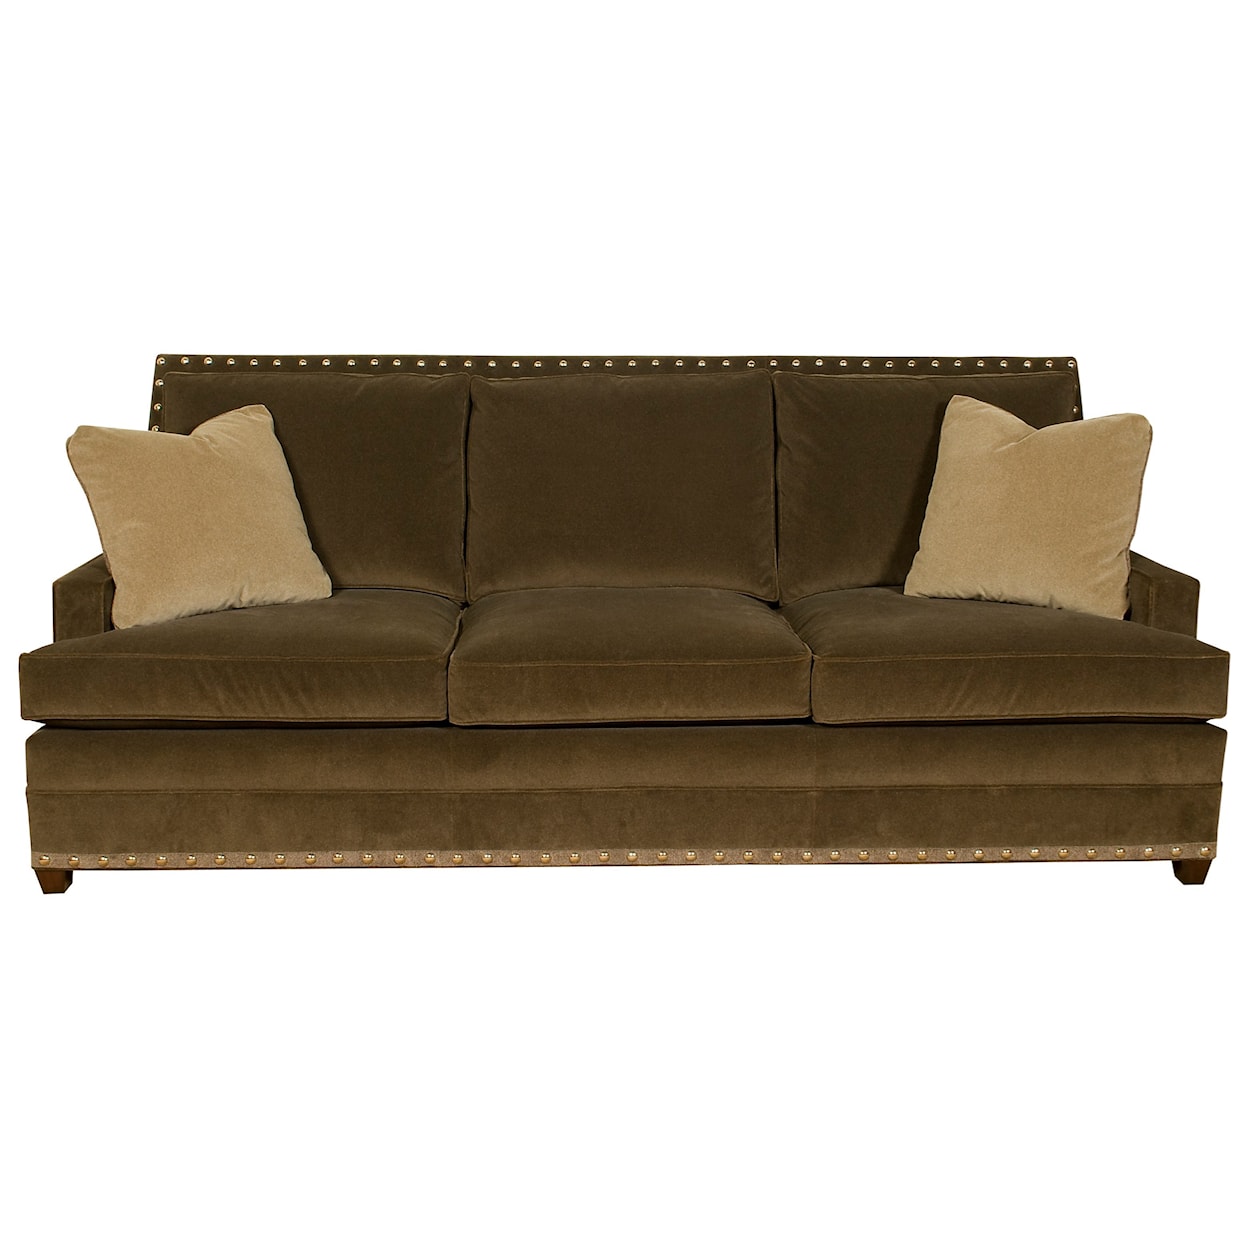 Vanguard Furniture American Bungalow Riverside 3 Seat Sofa